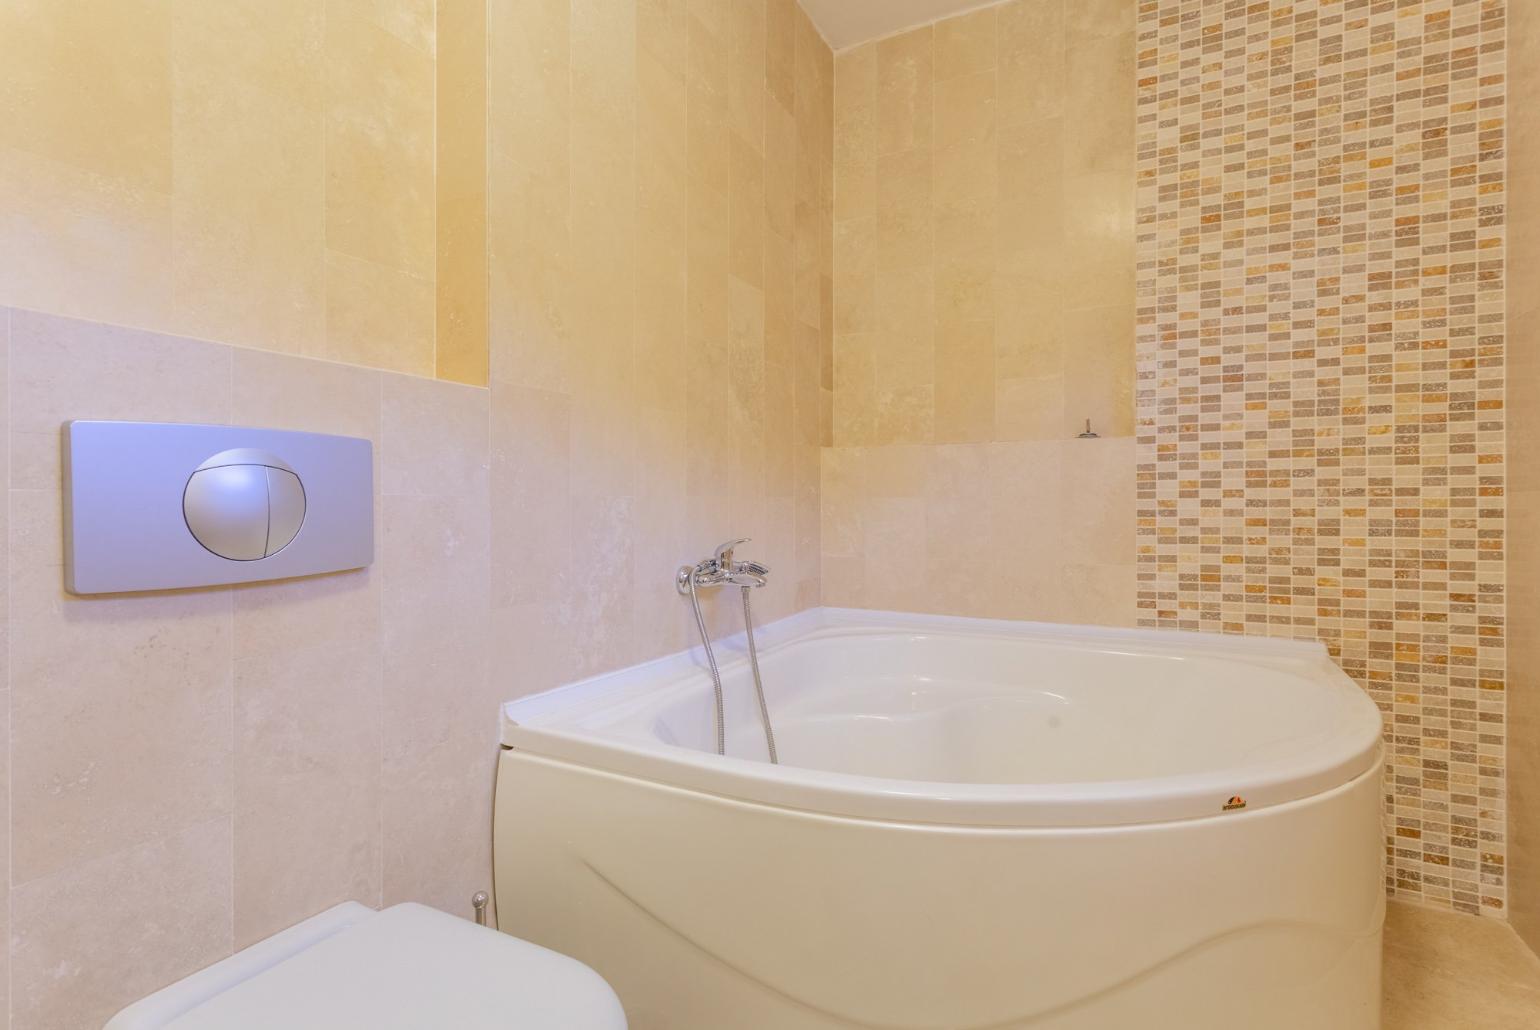 En suite bathroom with spa bath and shower